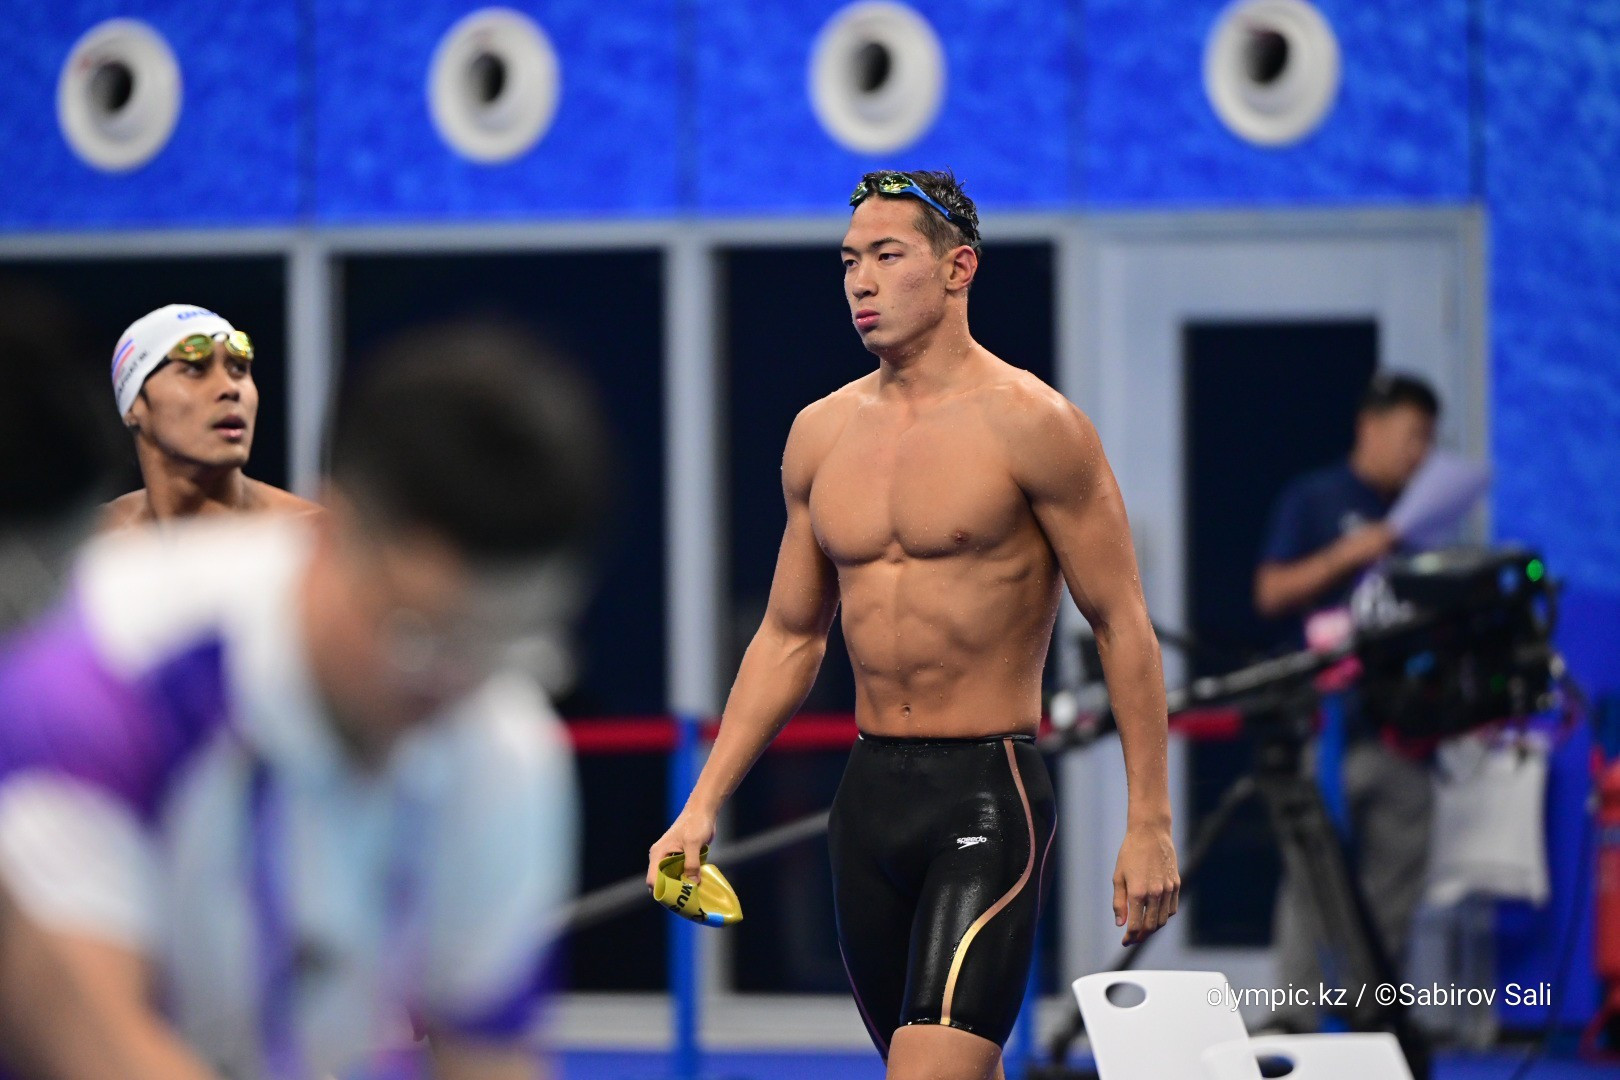 Вы сейчас просматриваете Стало известно, кто представит Казахстана на чемпионате мира по плаванию